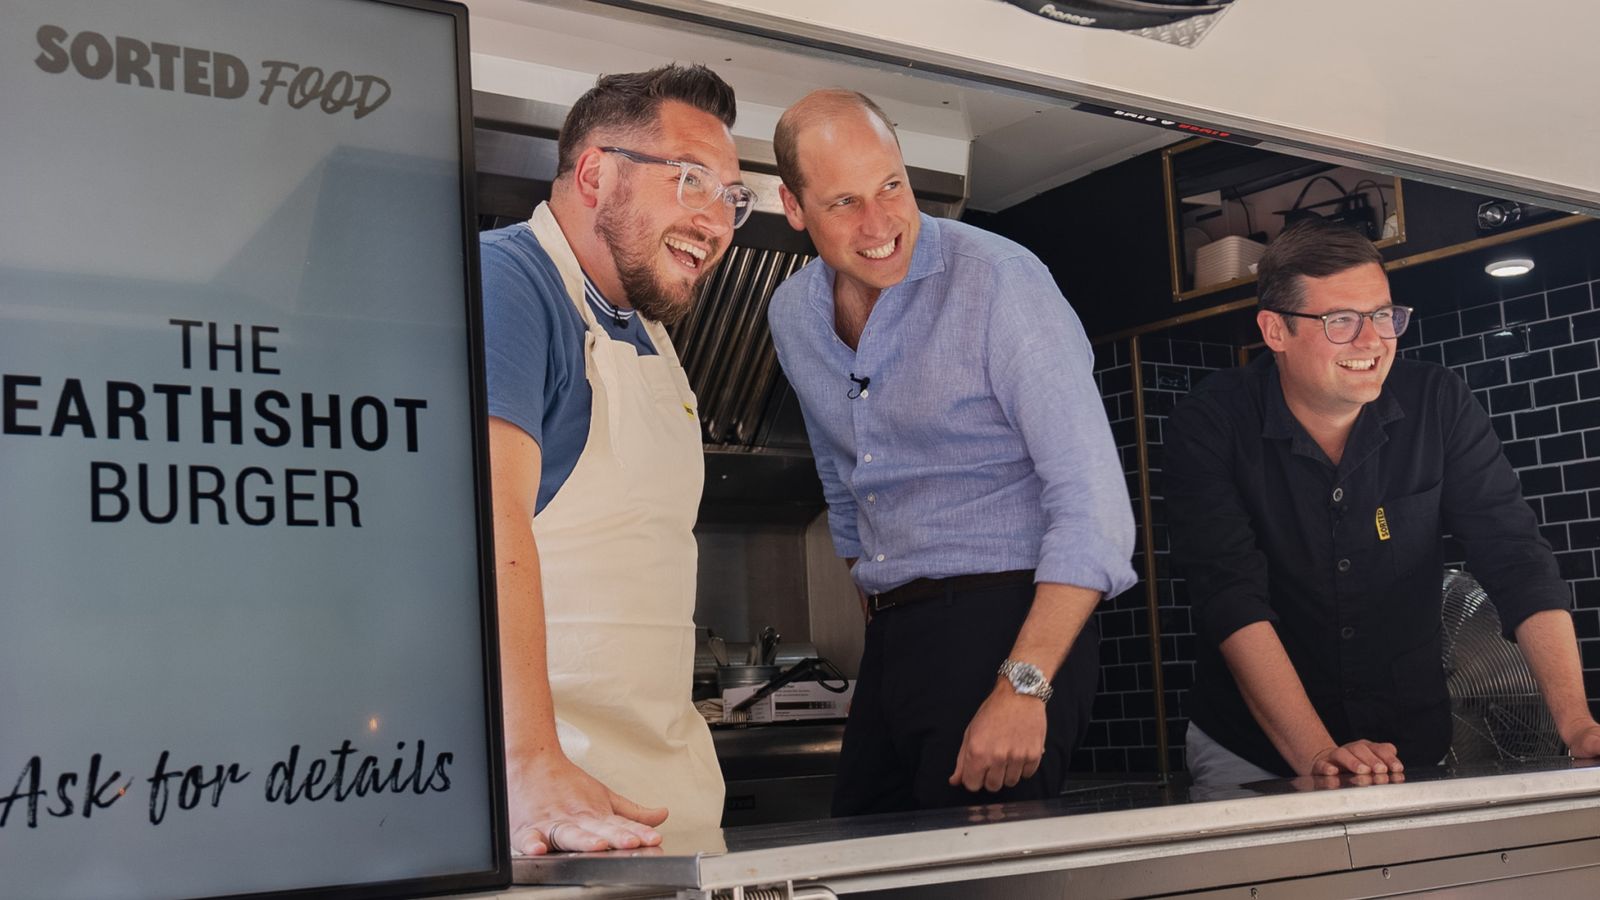 Prince William stuns food van diners by serving up Earthshot veggie burgers